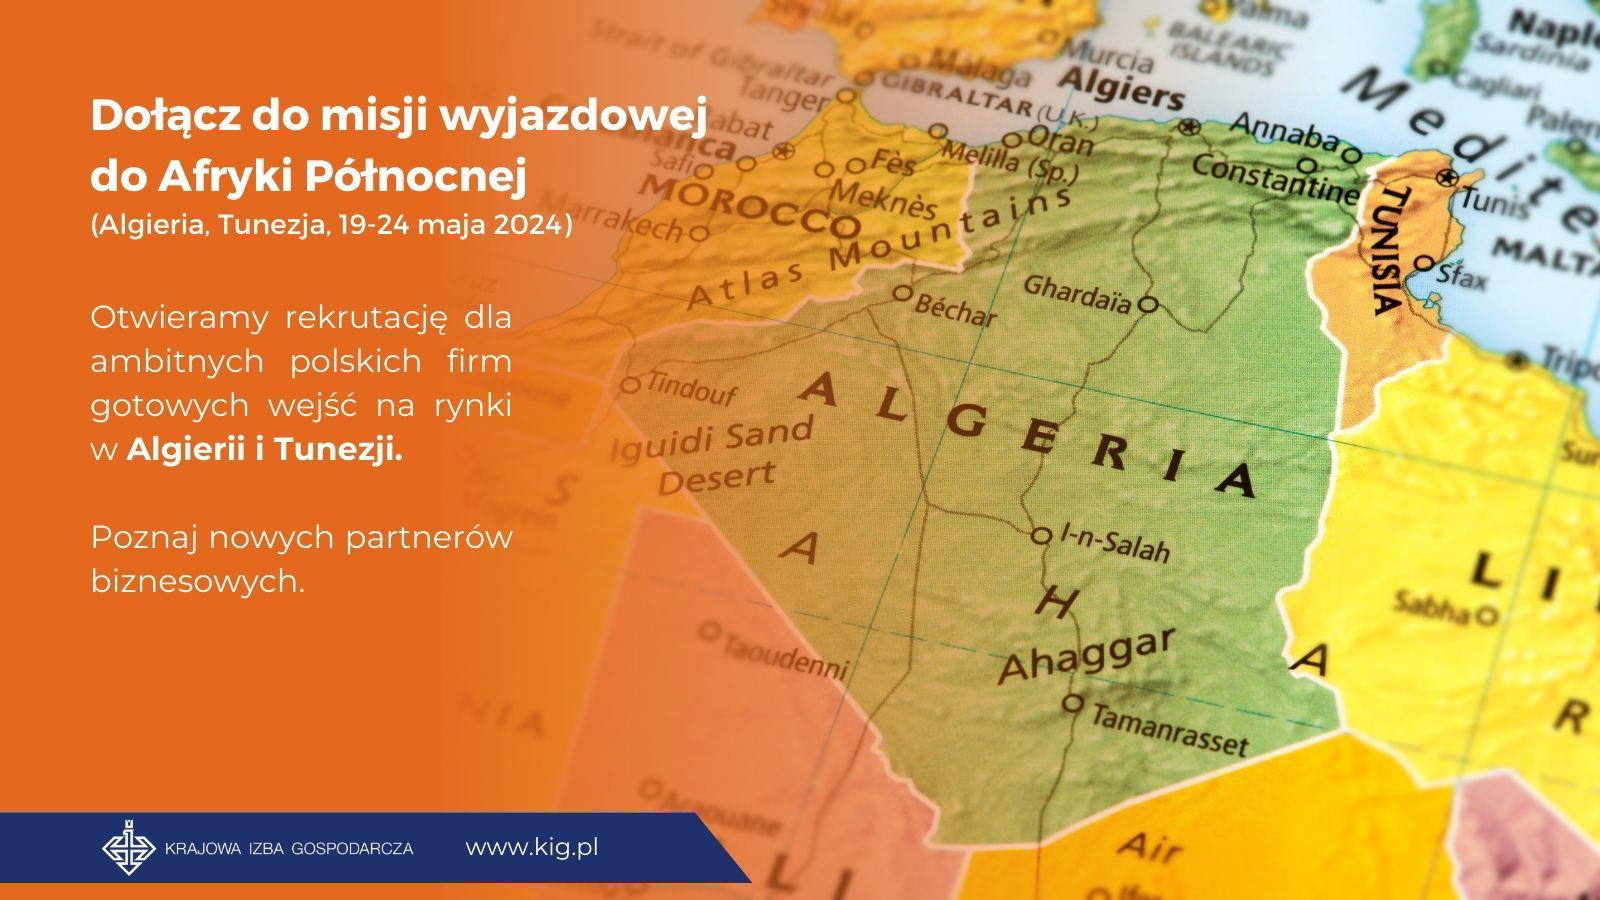 Zaproszenie KIG dla polskich przedsiębiorców na misję gospodarczą do Algierii i Tunezji w dniach 18-24 maja 2024 r.